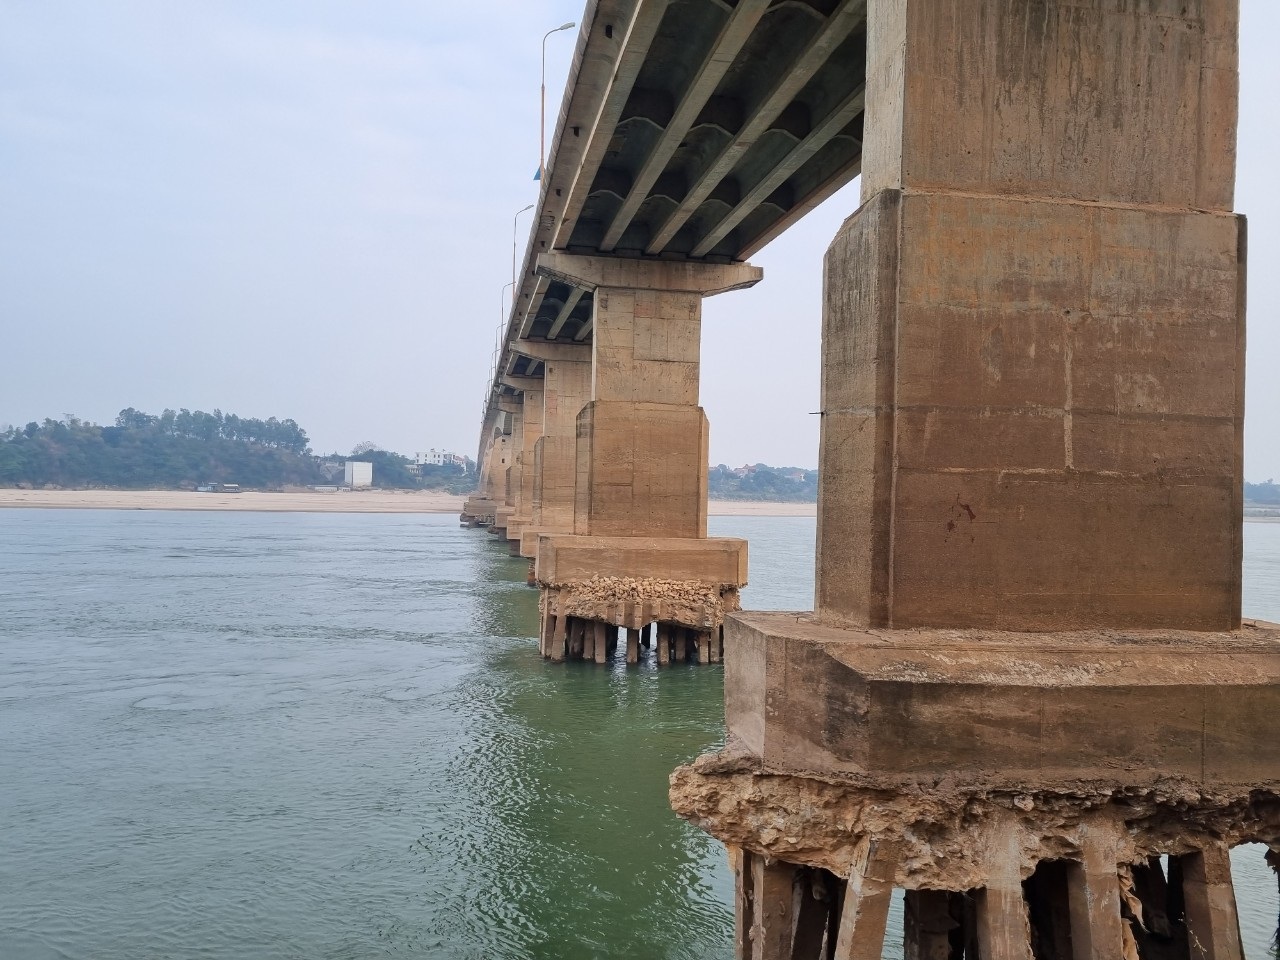 Trụ cầu Trung Hà nối Hà Nội - Phú Thọ trơ sắt thép: Chưa có phương án sửa - 2